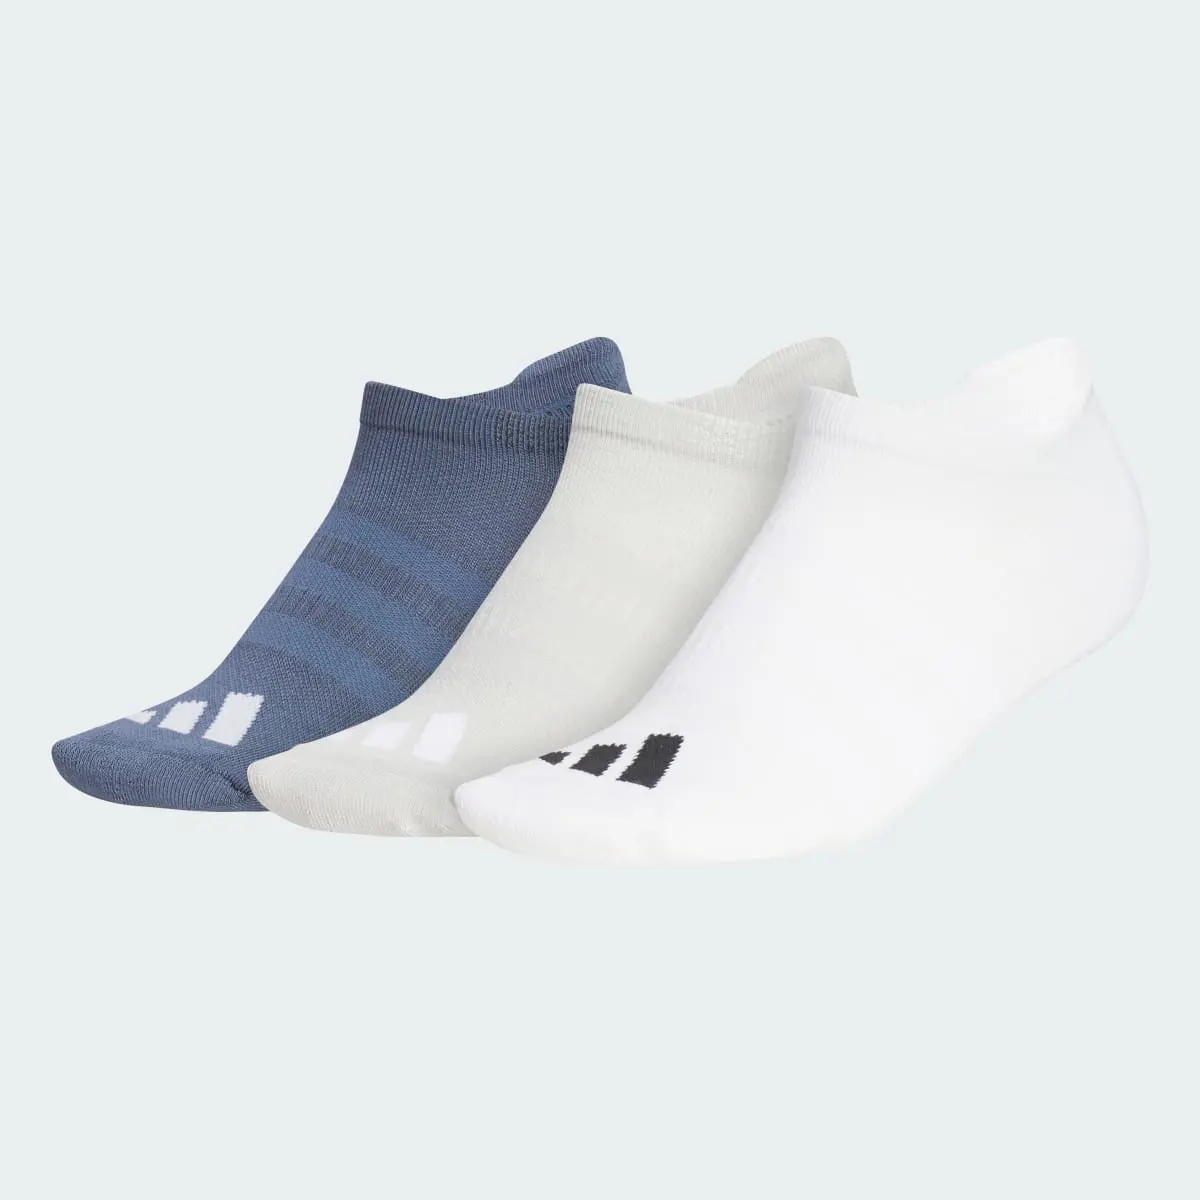 Adidas Women's Comfort Low-Cut Socken, 3 Paar. 2